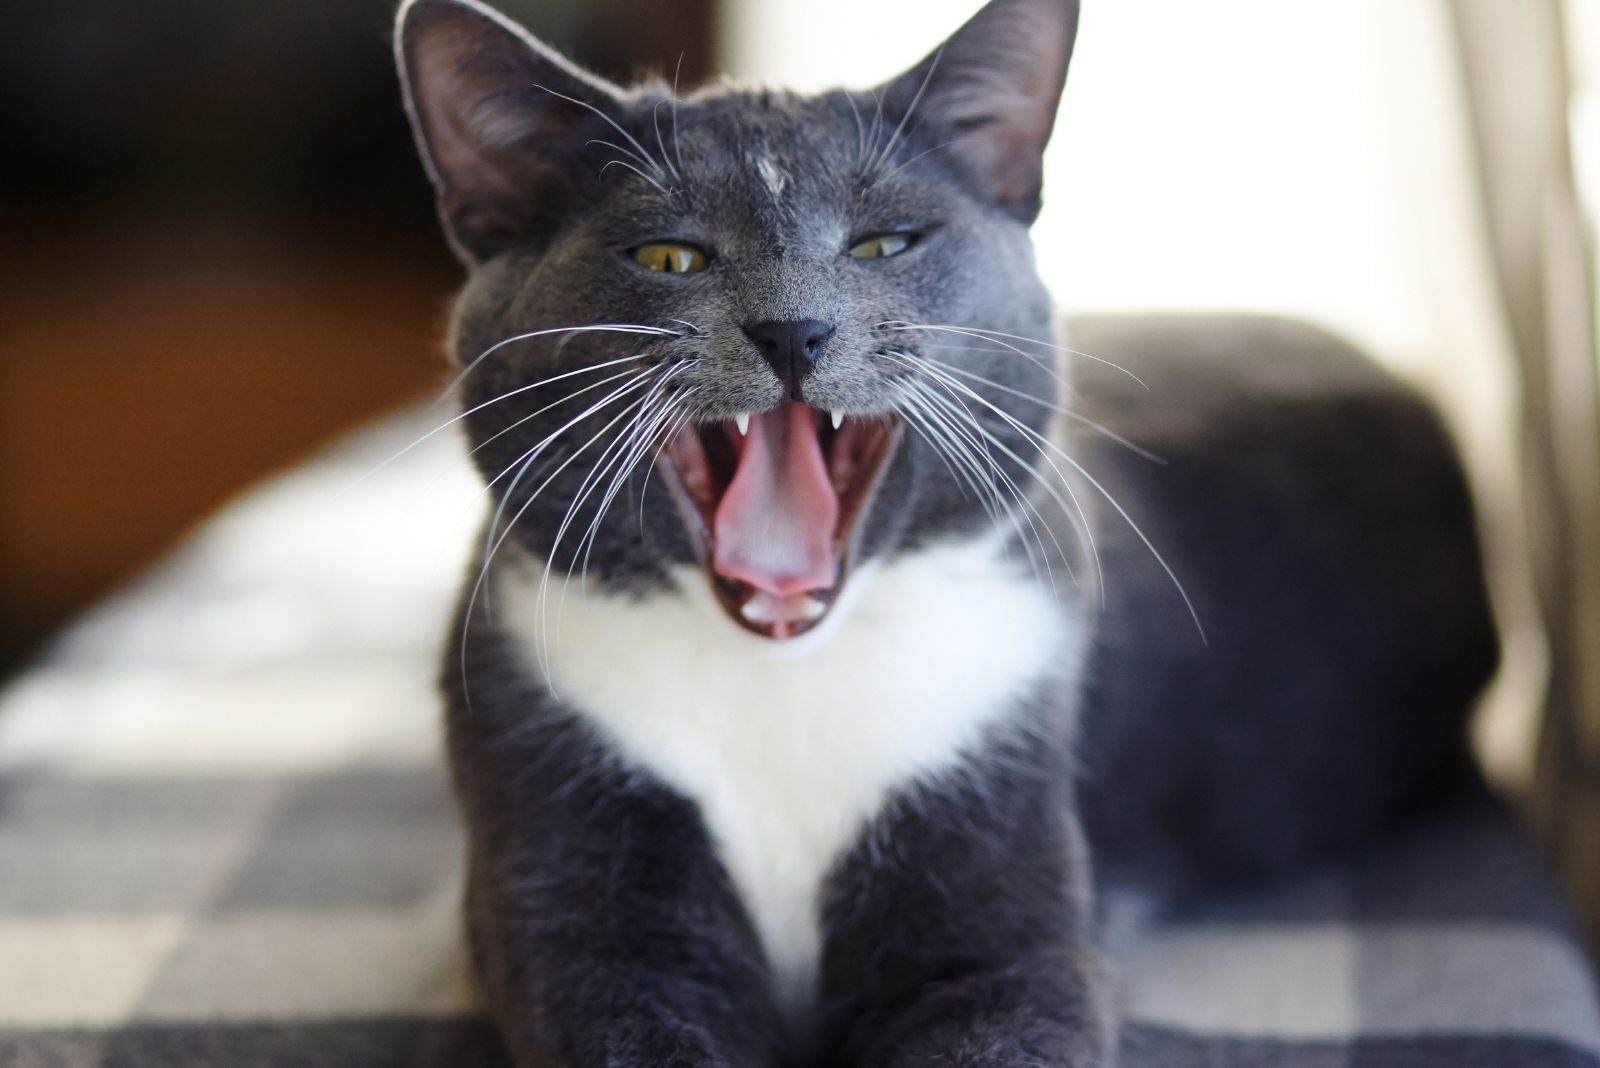 grijswitte kat met tong uit